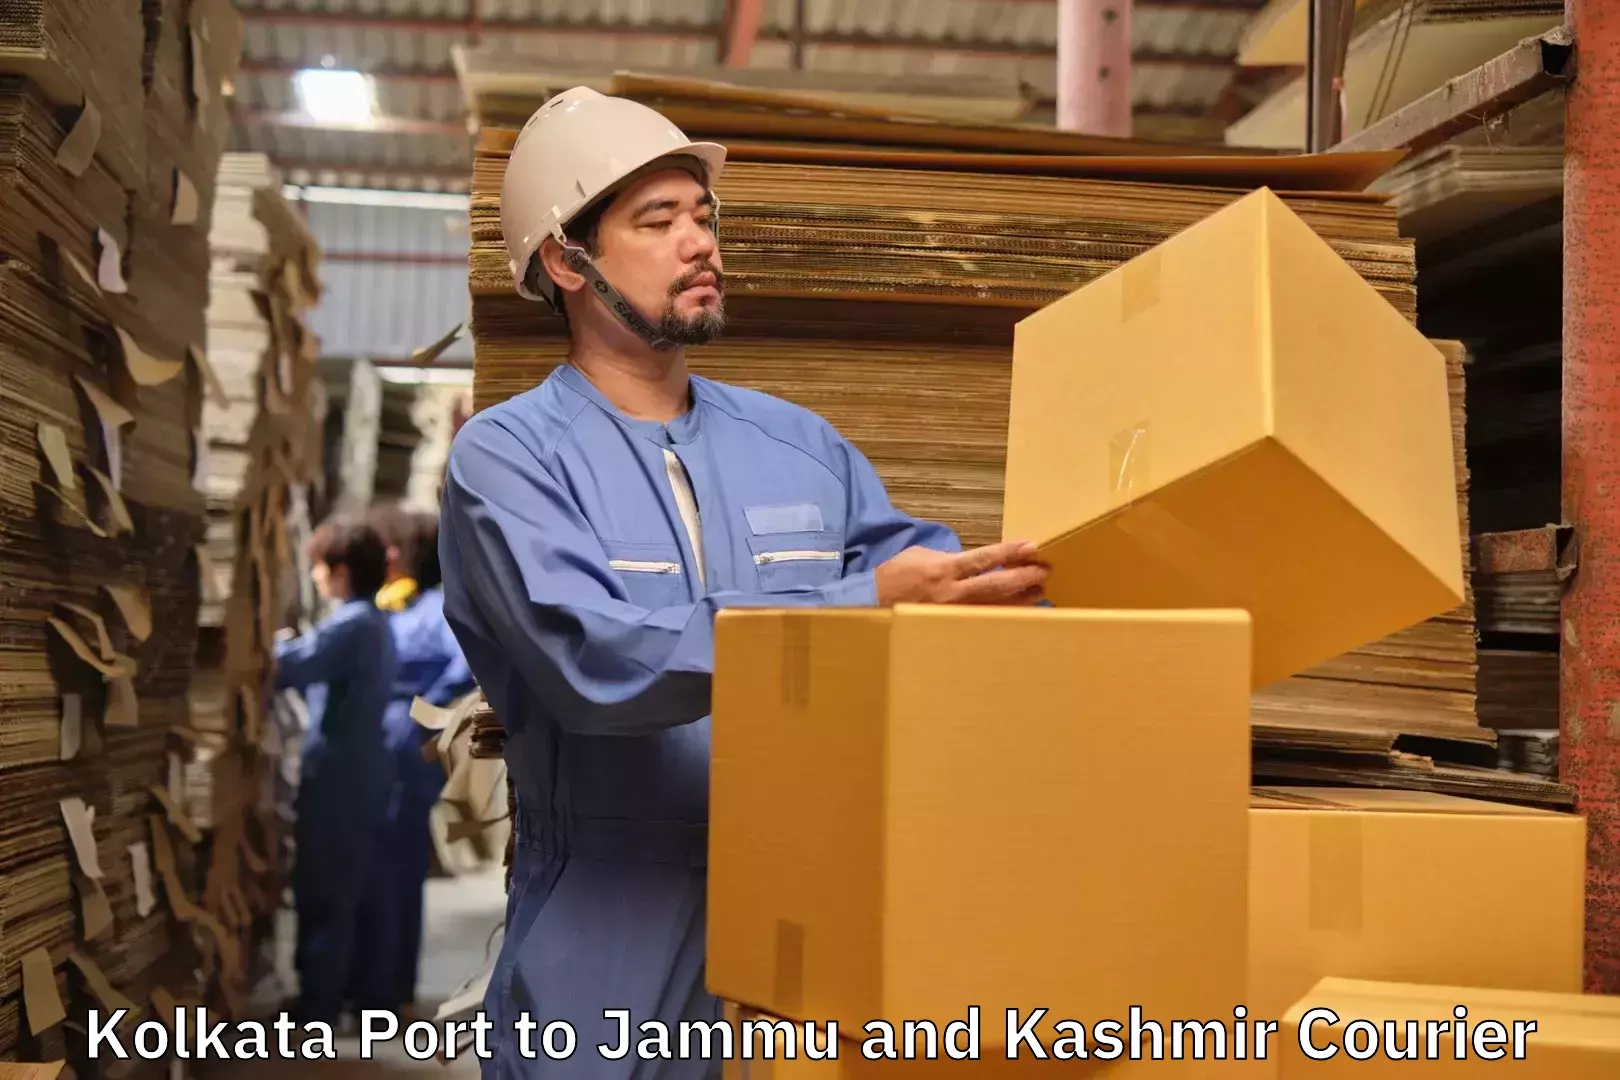 Baggage delivery scheduling Kolkata Port to Srinagar Kashmir